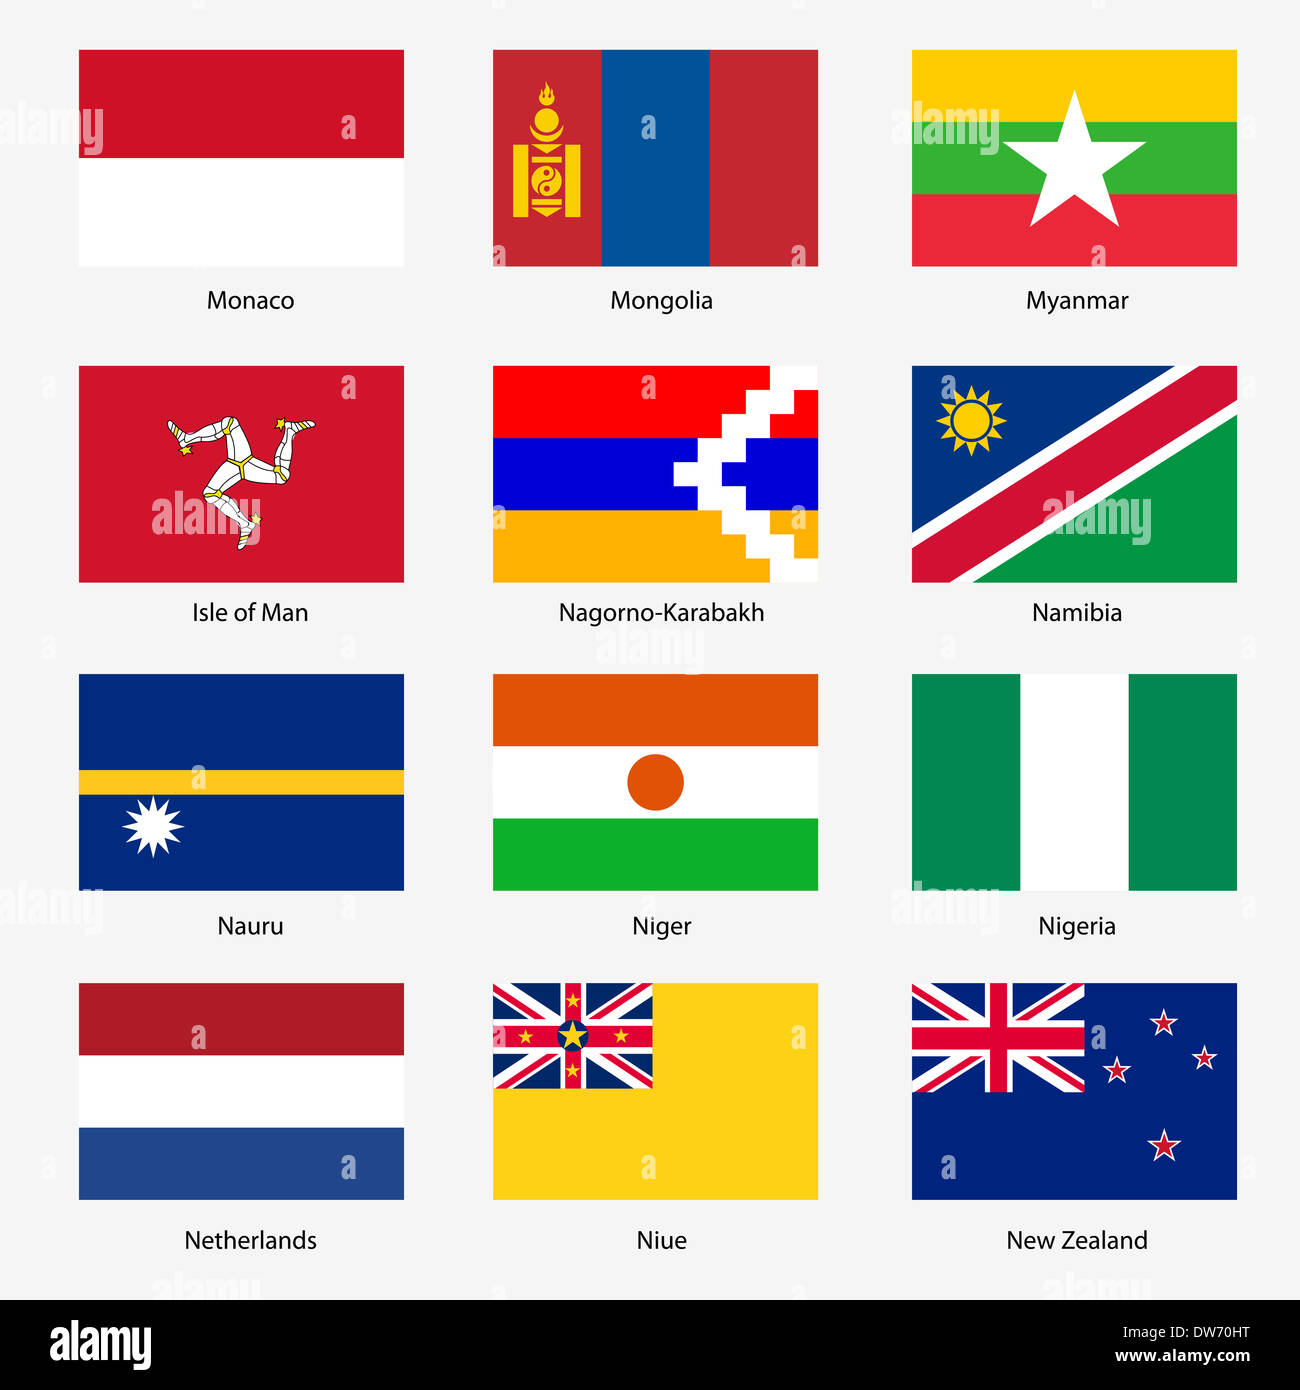 Флаг какой страны в форме квадрата. Похожит флаги государств.